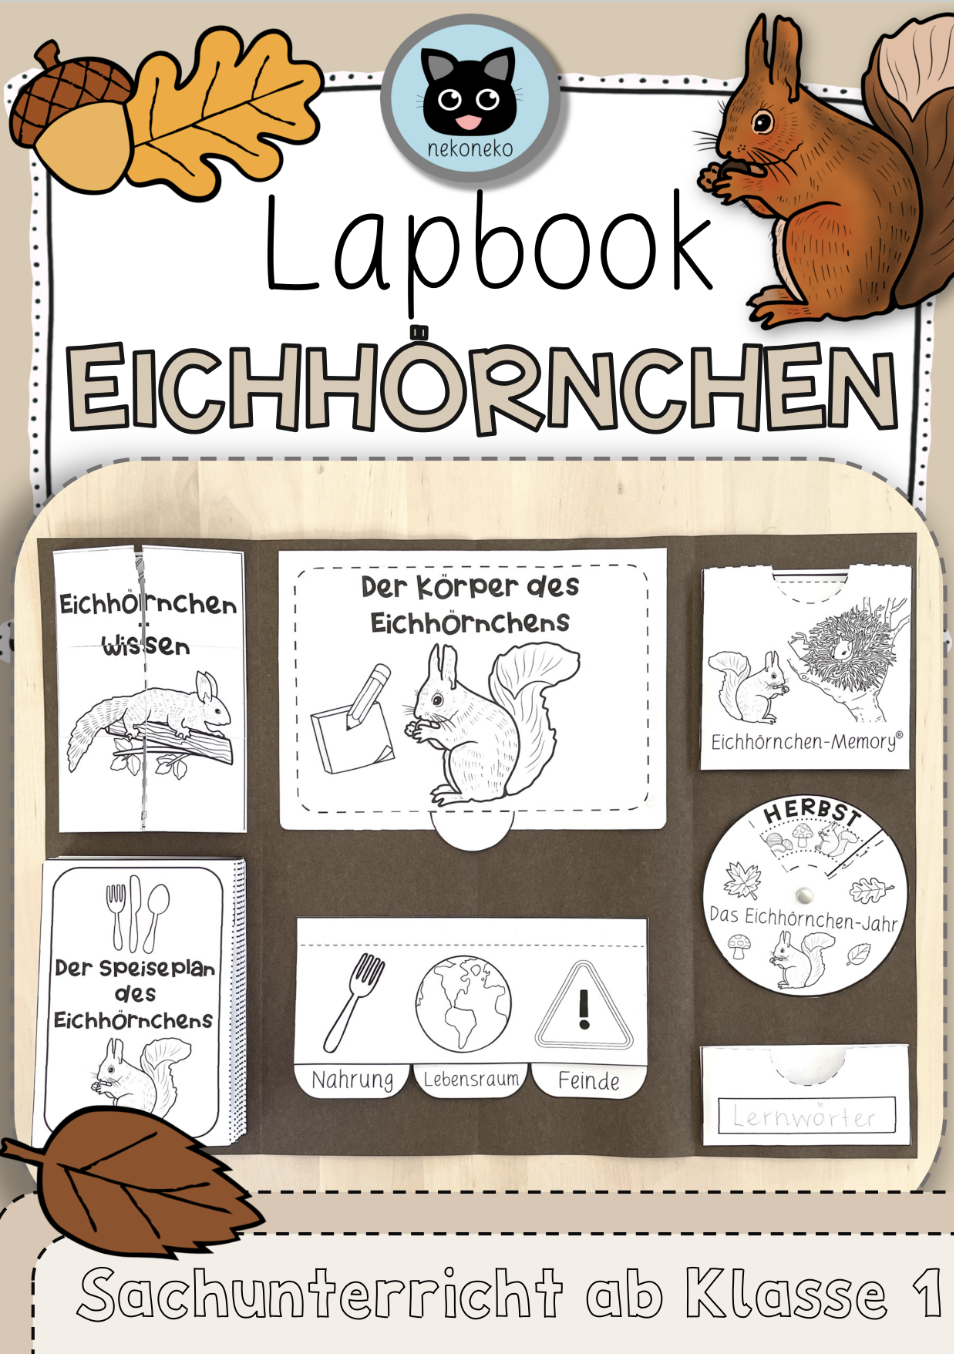 Lapbook | Eichhörnchen | Sachunterricht ab Klasse 1